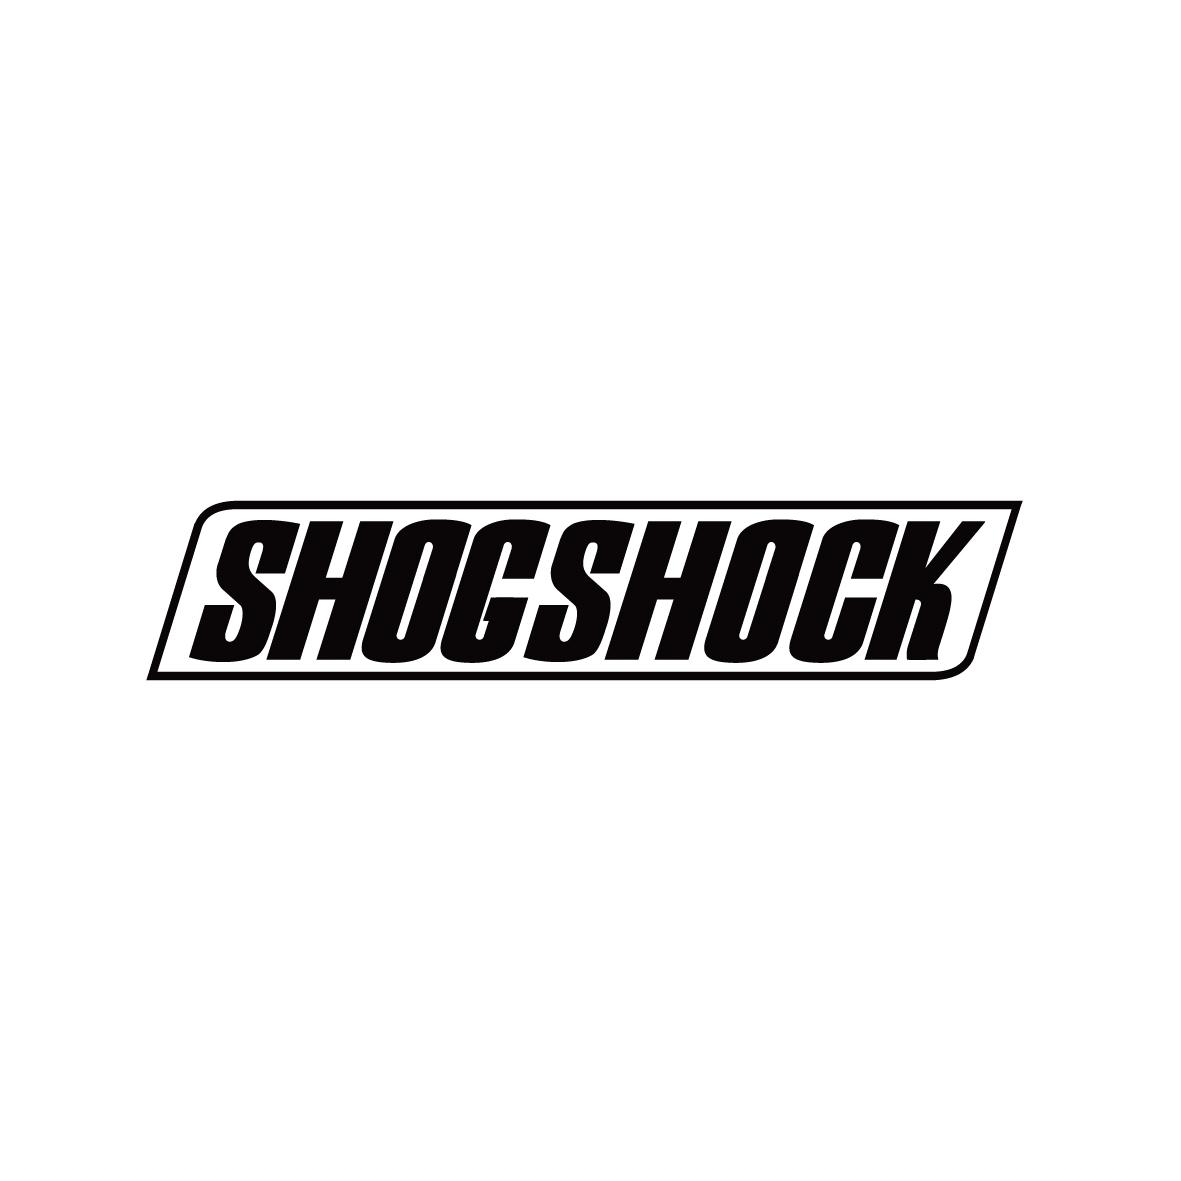 SHOGSHOCK